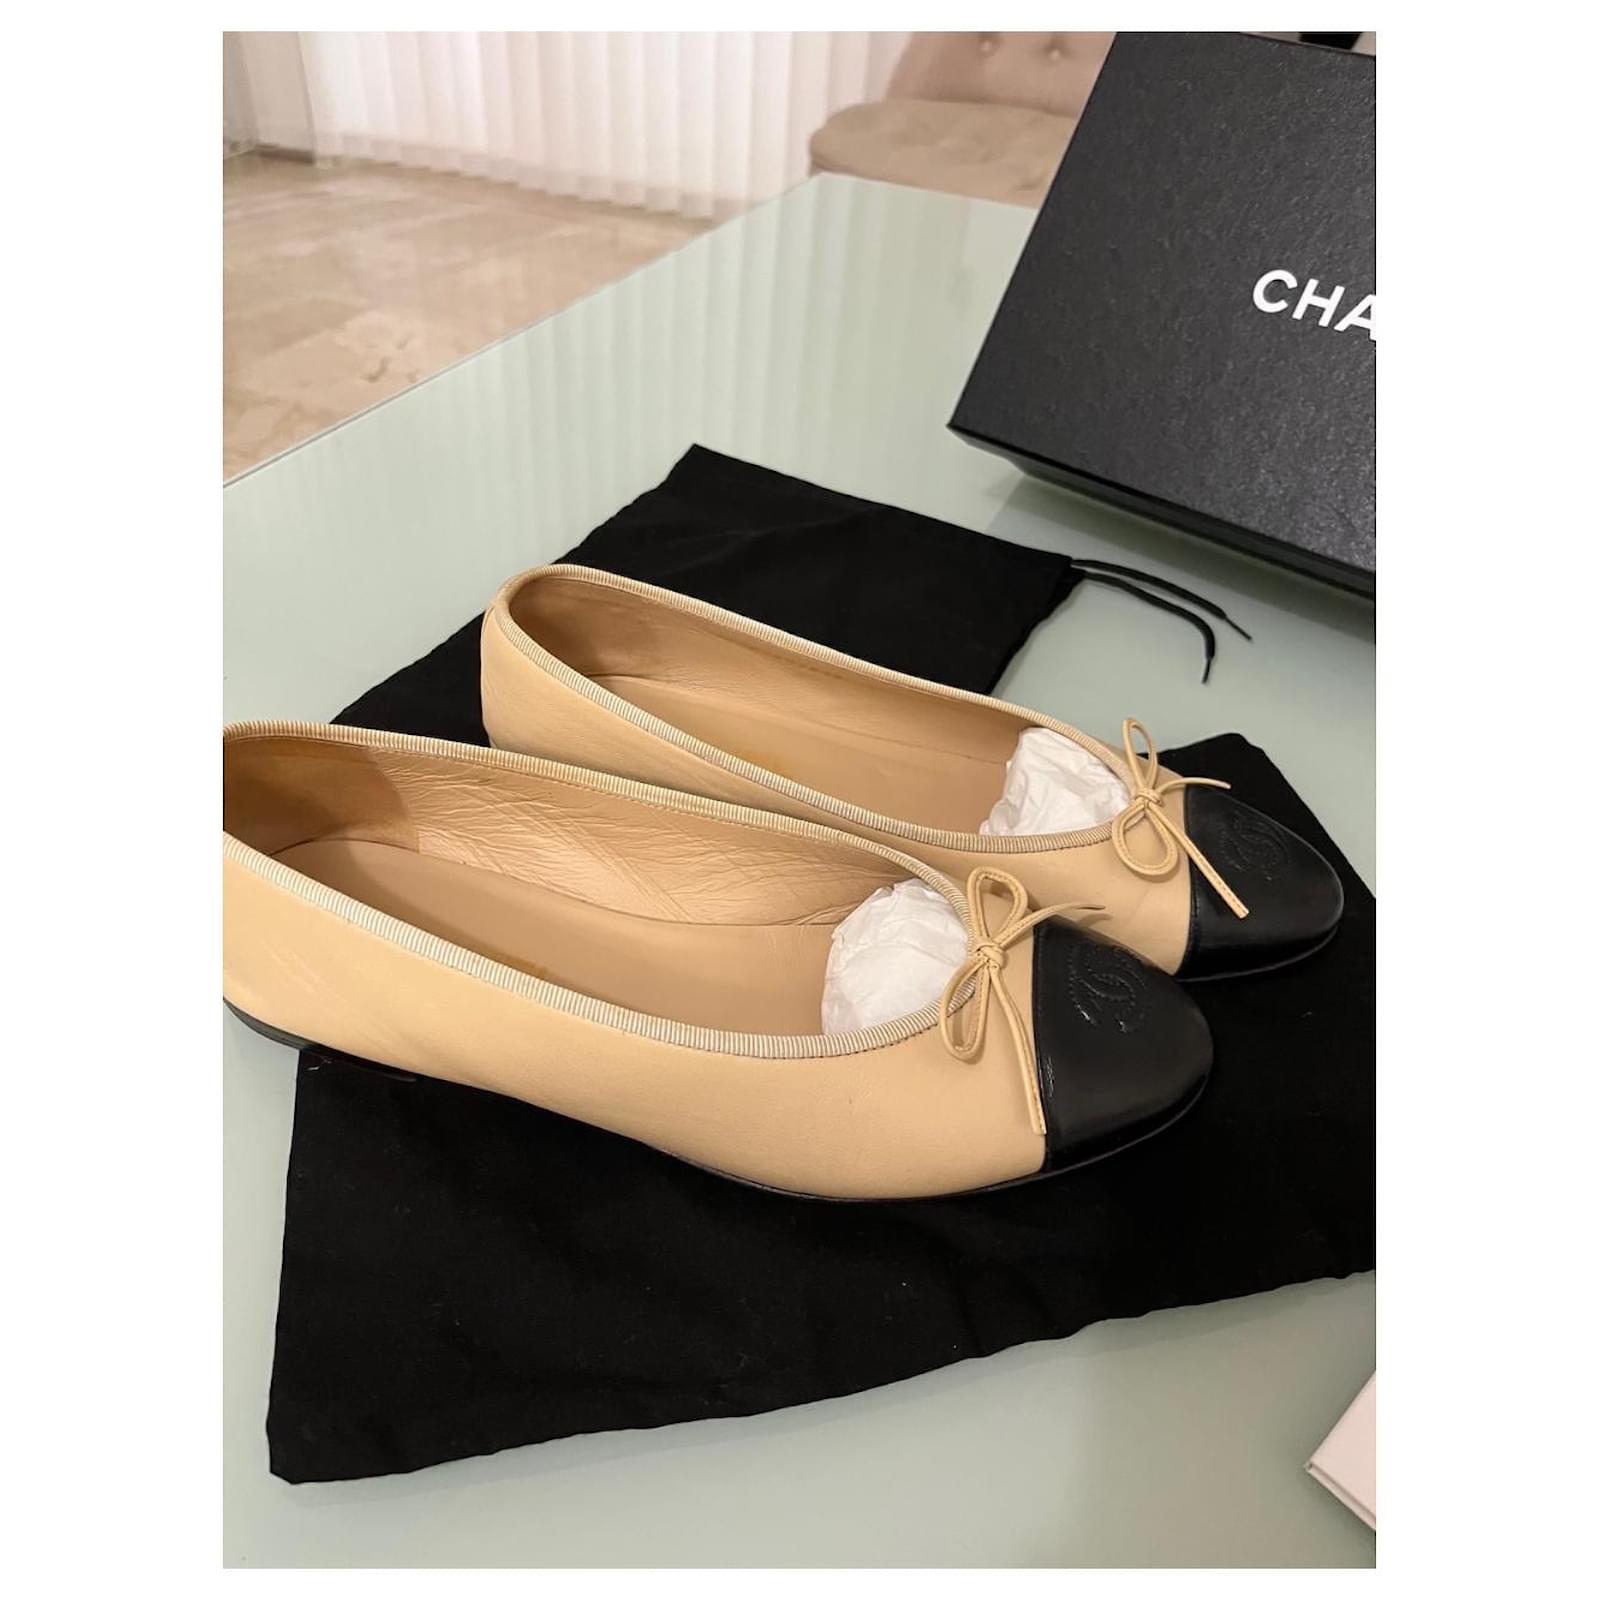 Chanel Bi-Color Ballet Shoes 36 Size Women